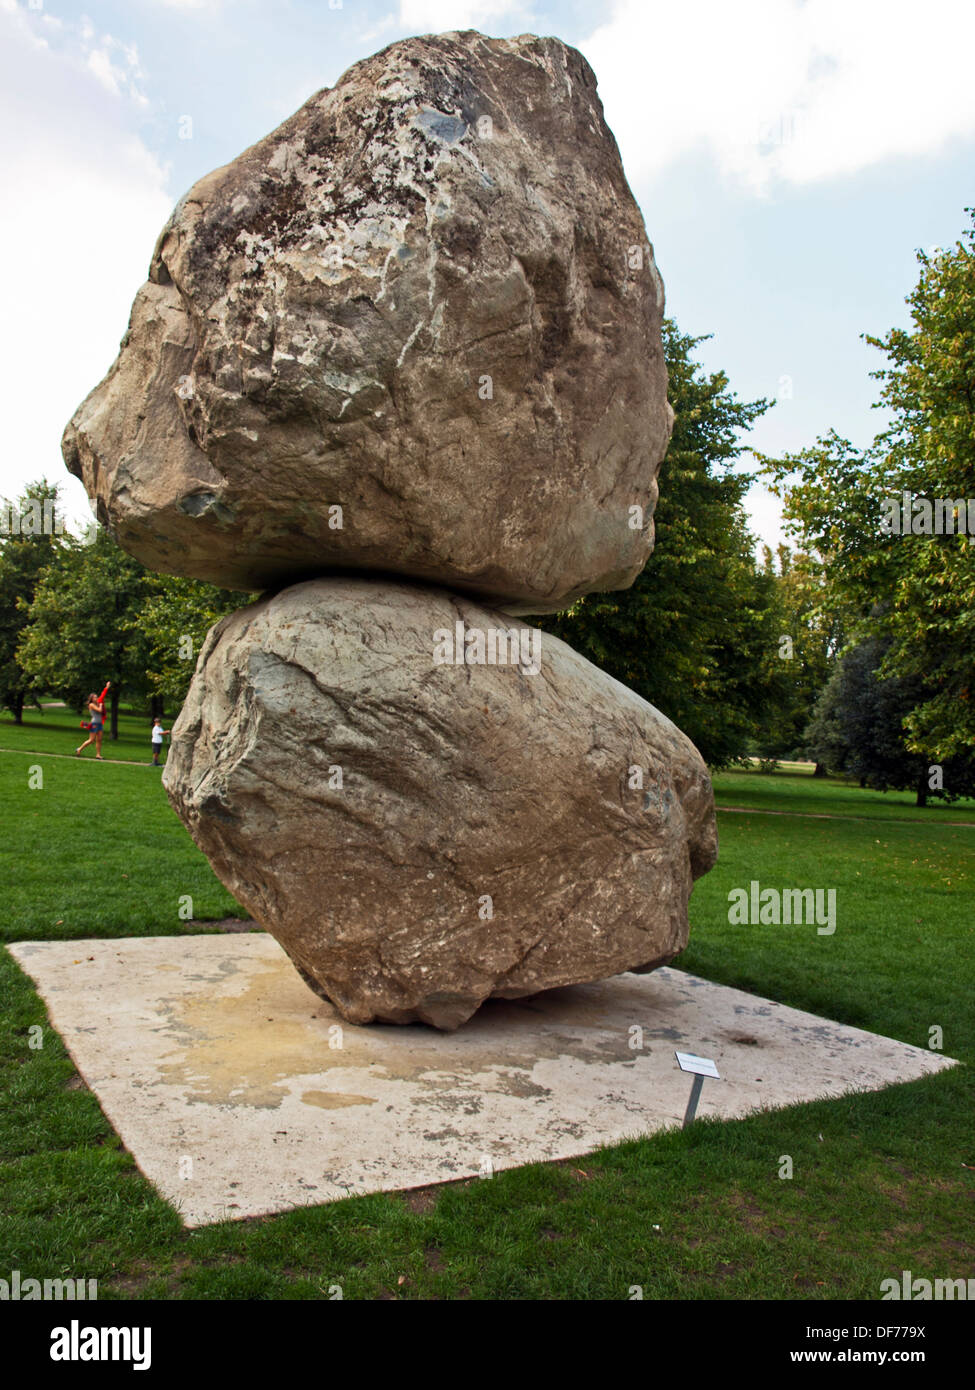 "Rocher au-dessus d'une autre Rock' sculpture de Fischli/Weiss à la Serpentine Gallery, Kensington Gardens, Hyde Park, London Banque D'Images